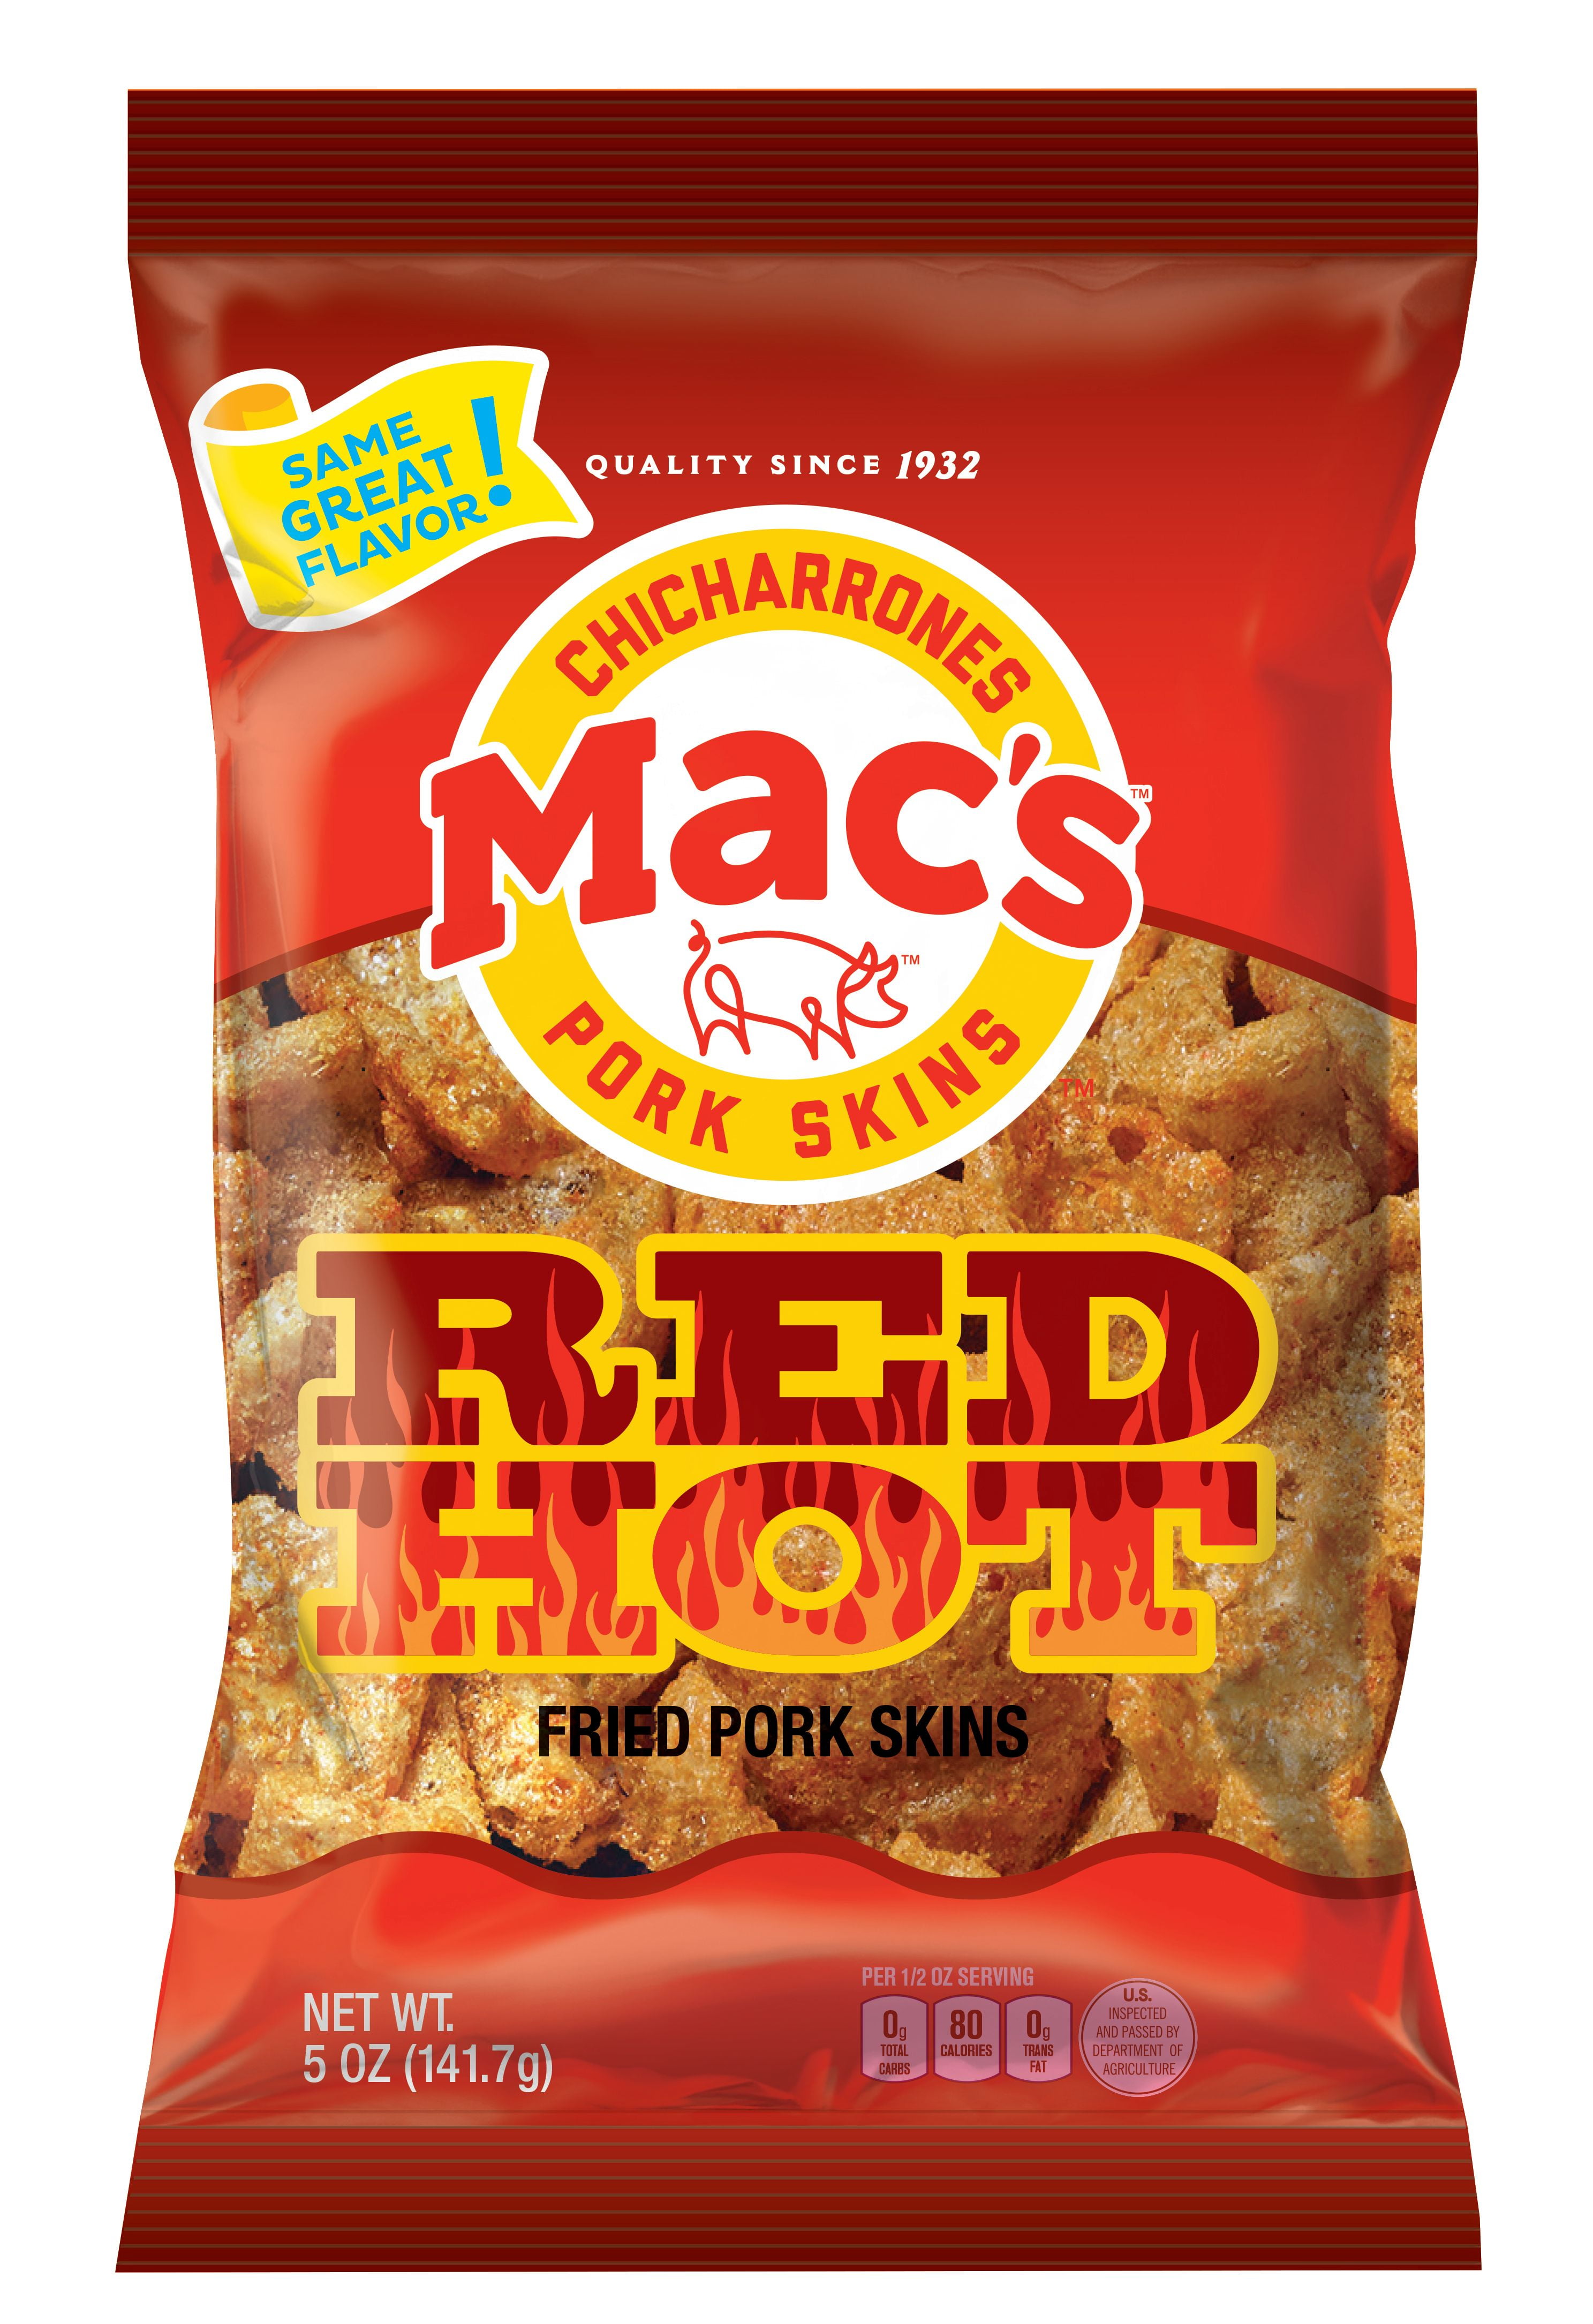 Mac's Red Hot Crispy Fried Pork Skins, 5 oz Bag - Walmart.com.